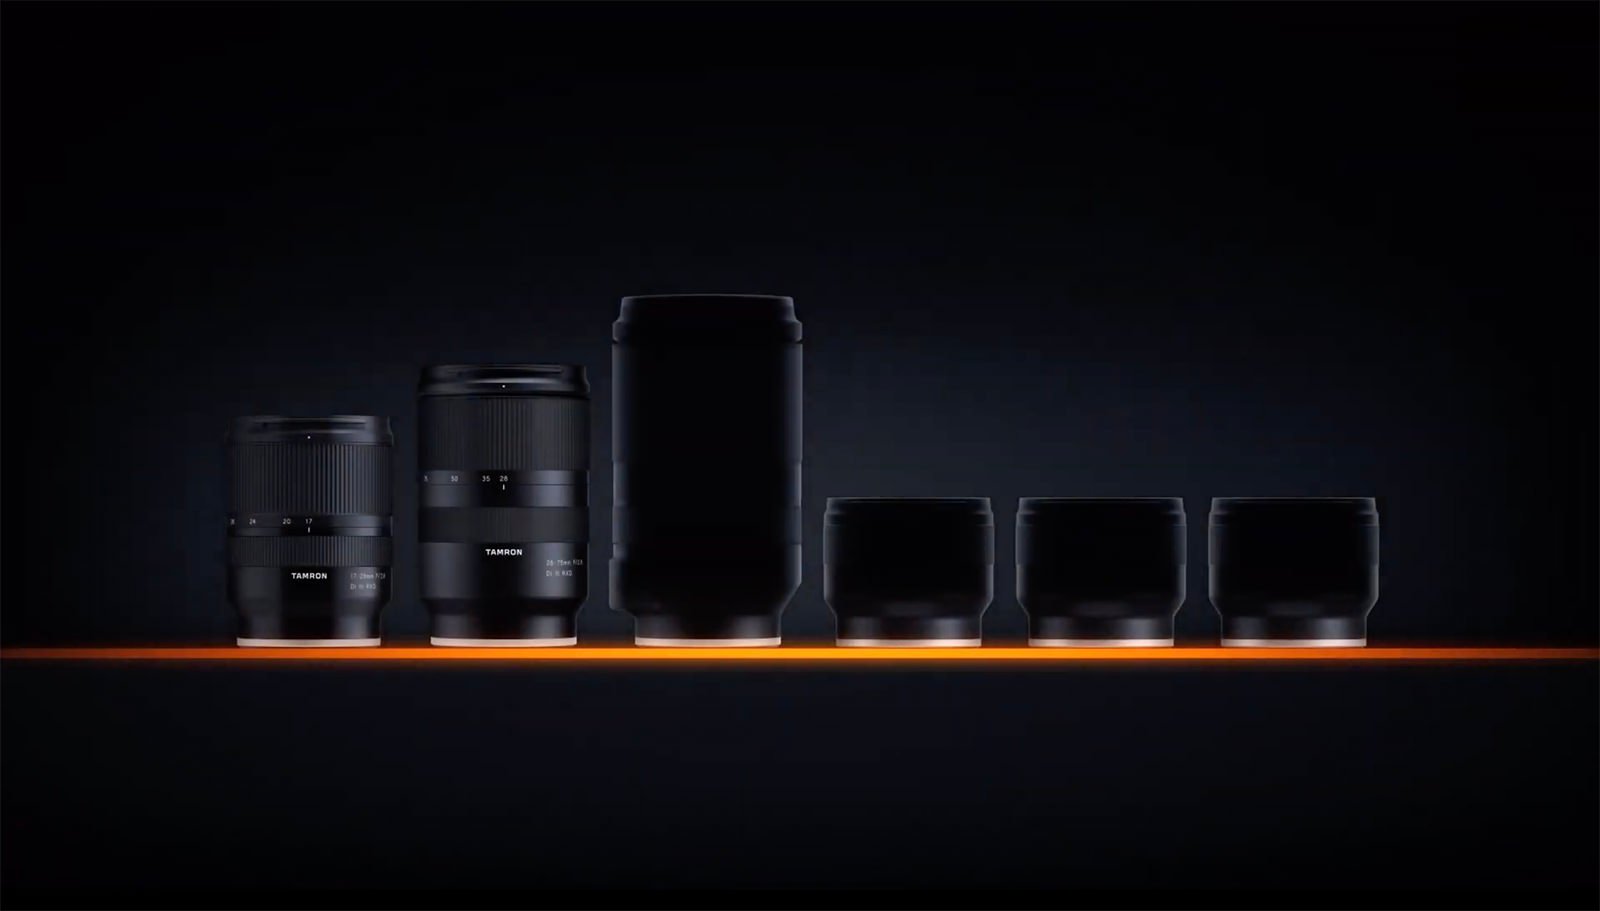 Tamron Teases Four New Full-Frame Lenses for Sony E-Mount